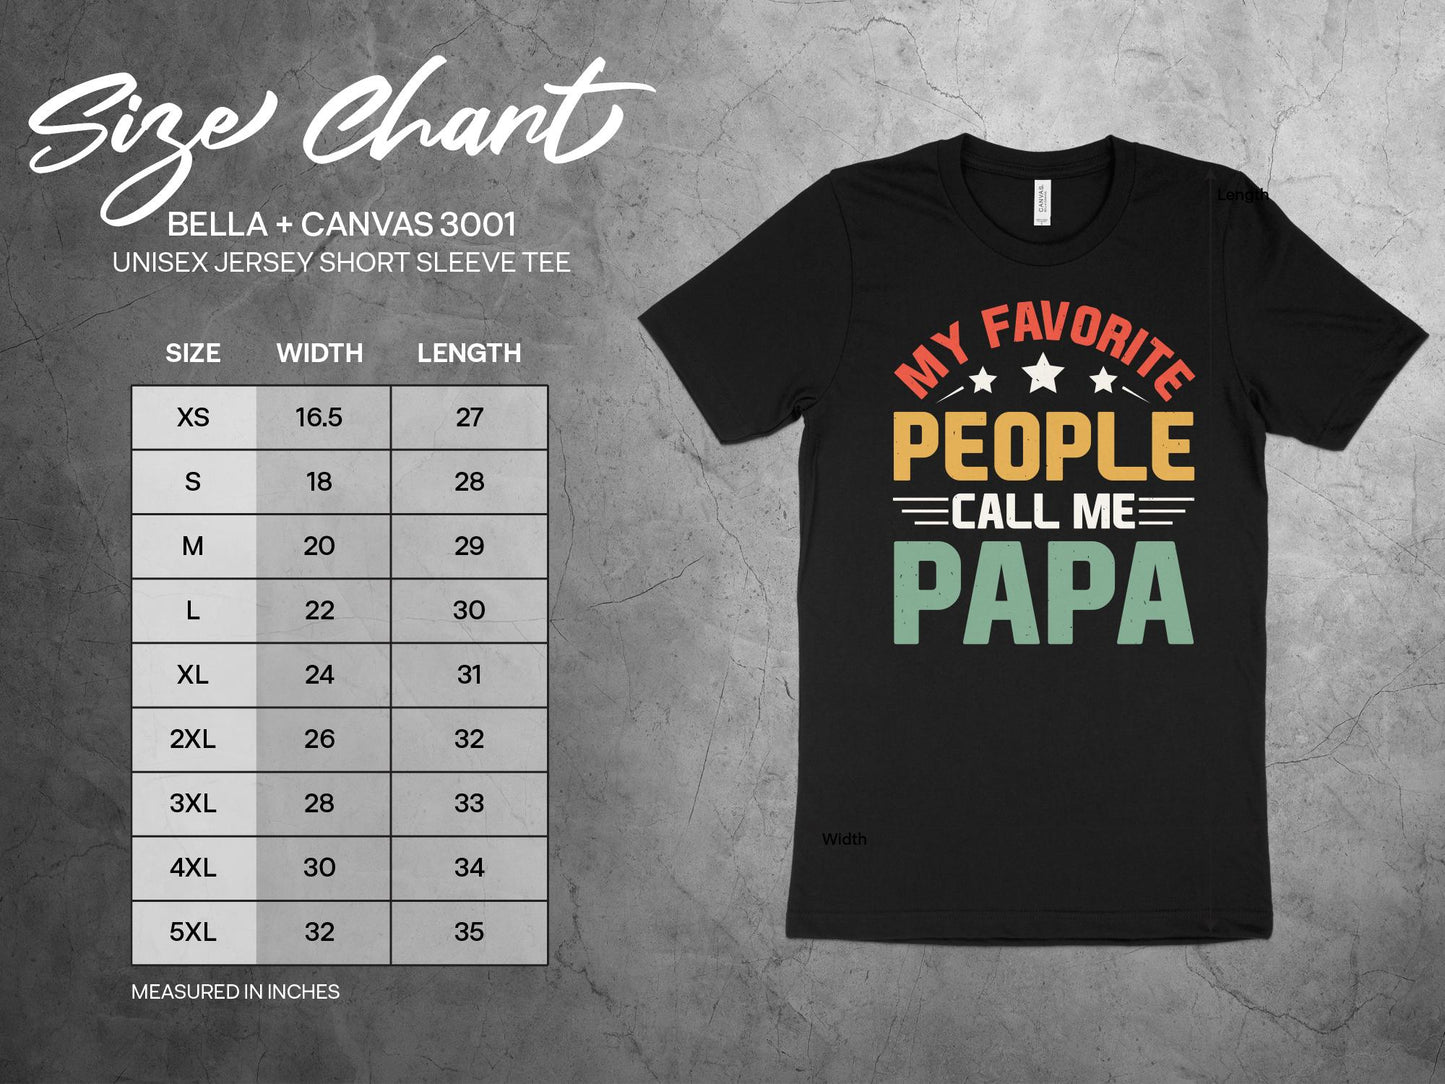 My Favorite People Call Me Papa Shirt, sizing chart